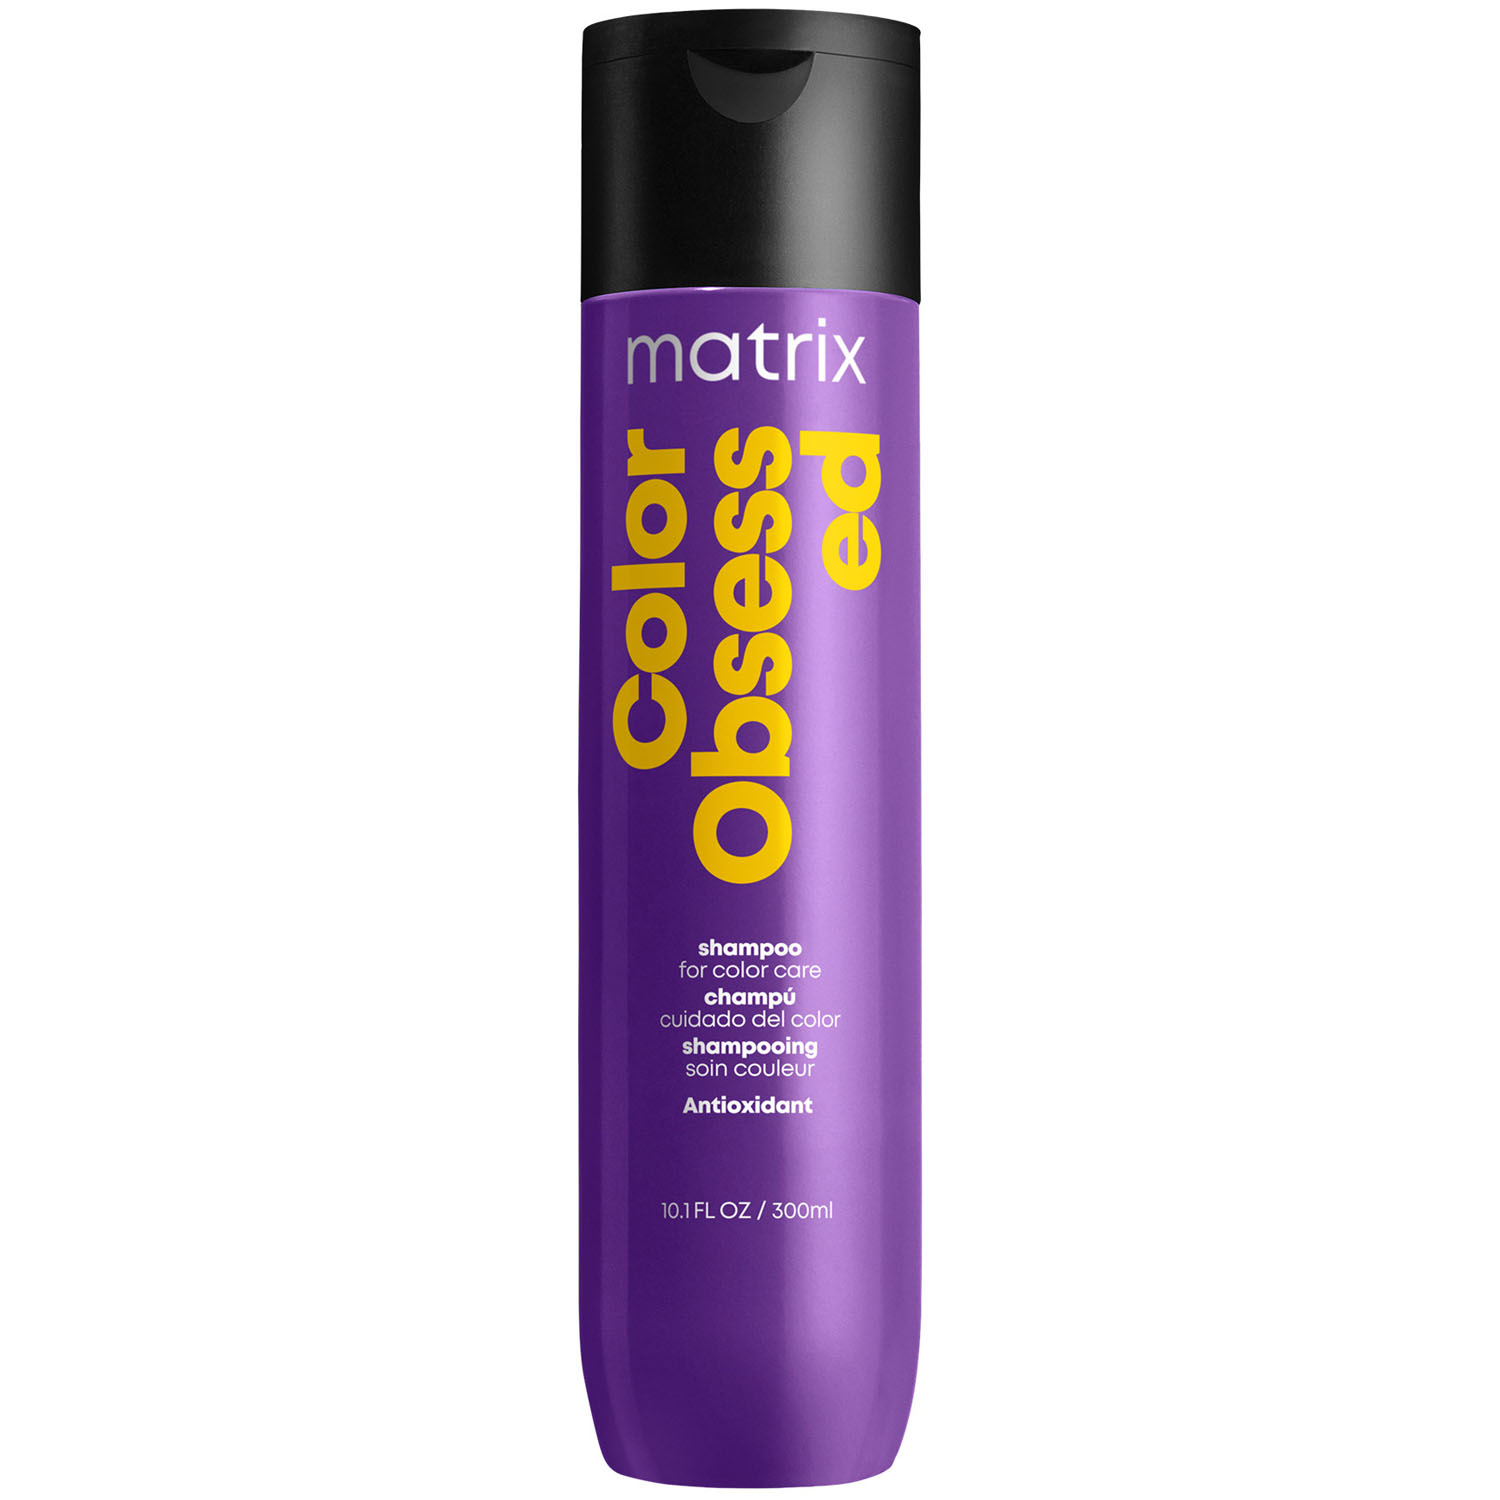 Matrix Шампунь с антиоксидантами для окрашенных волос, 300 мл (Matrix, Total results) профессиональный шампунь color obsessed для окрашенных волос